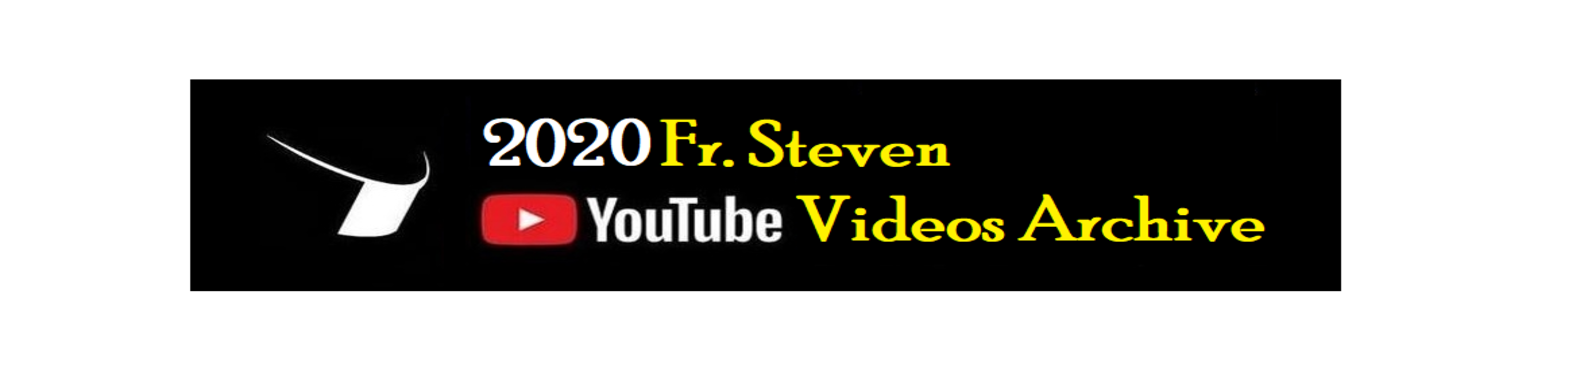 2020 fr steven youtube videos archive banner